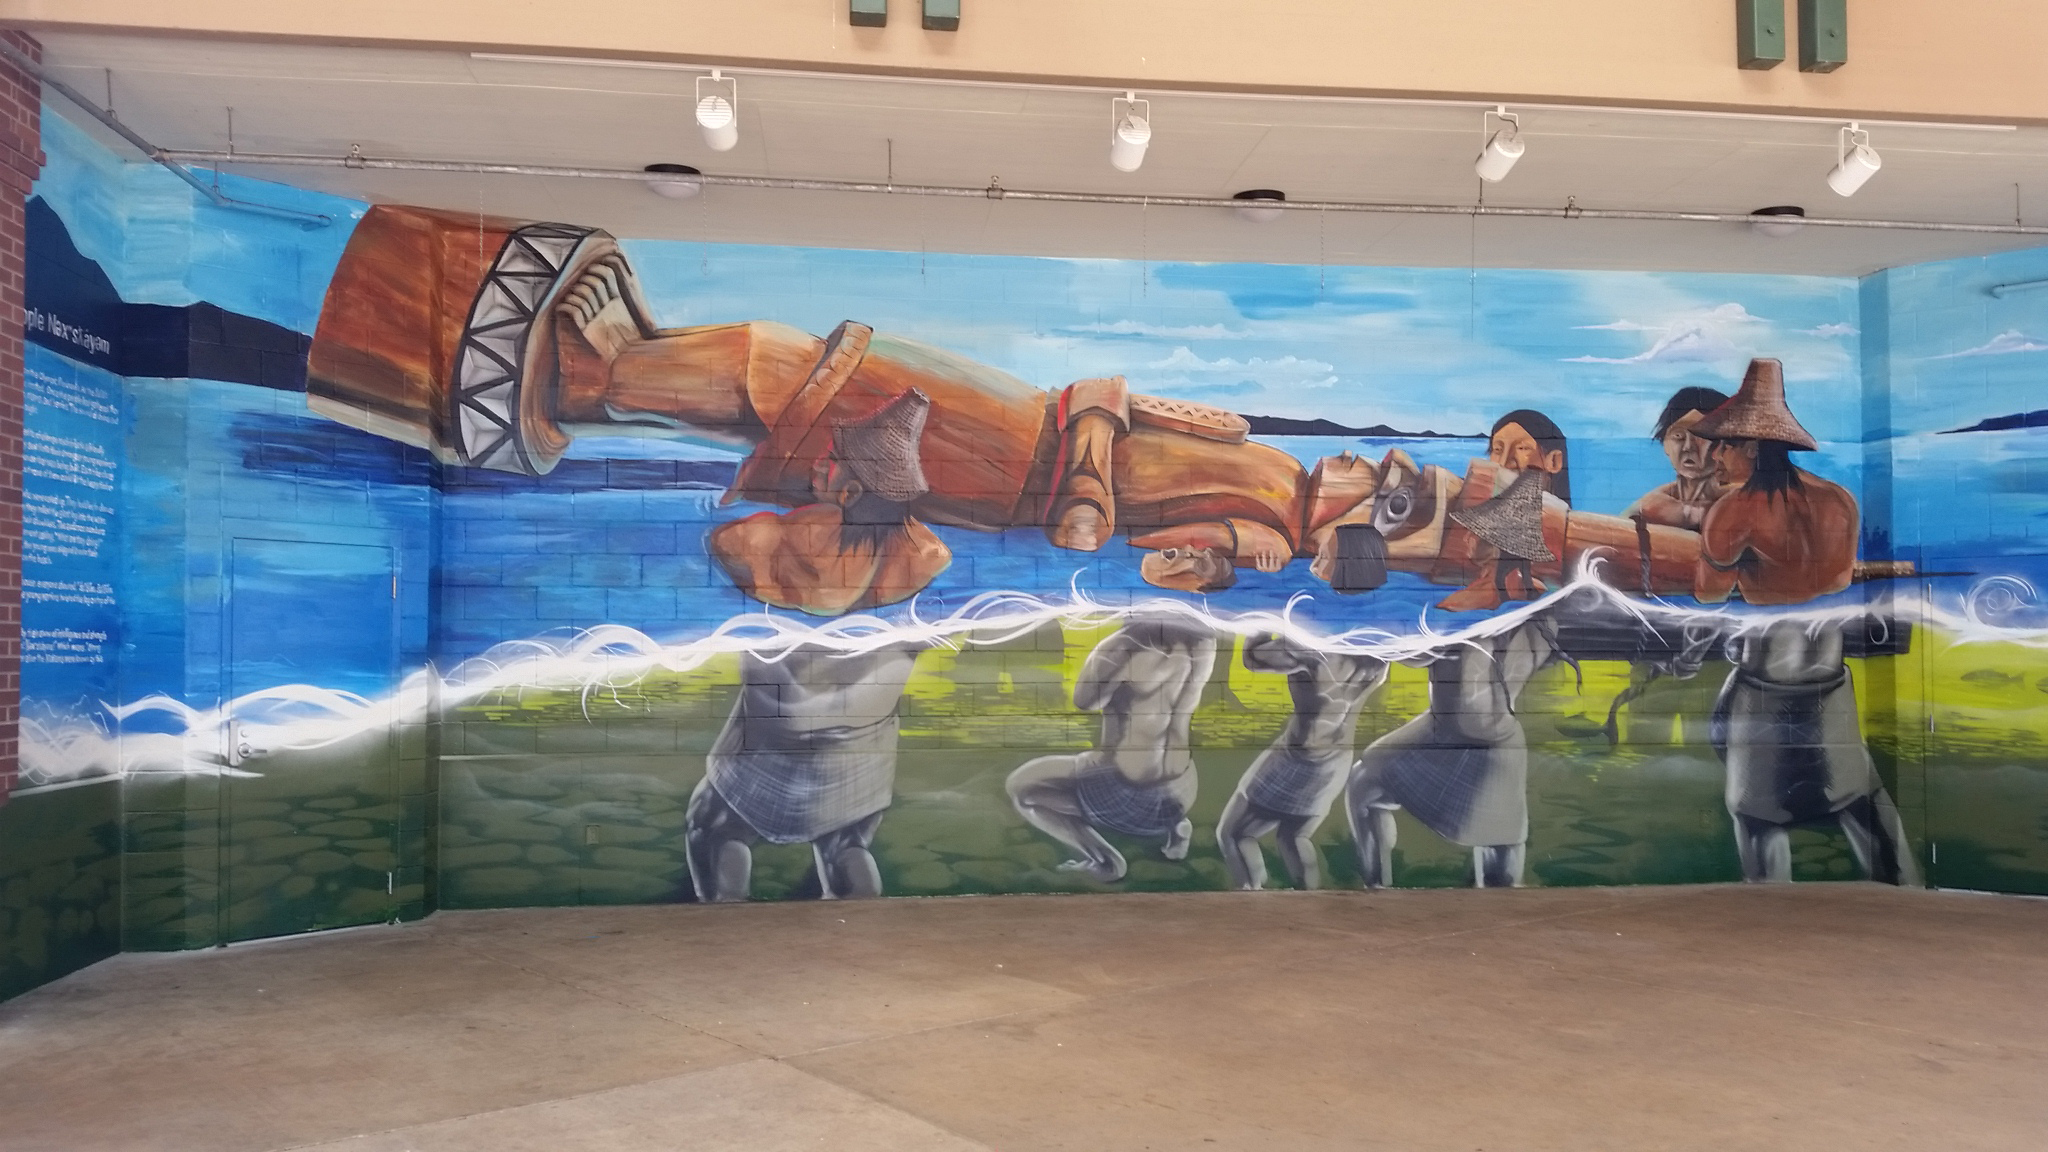 https://olympicpeninsula.org/wp-content/uploads/2018/08/Port-Angeles-Klallam-Tribe-Mural.jpg.jpg